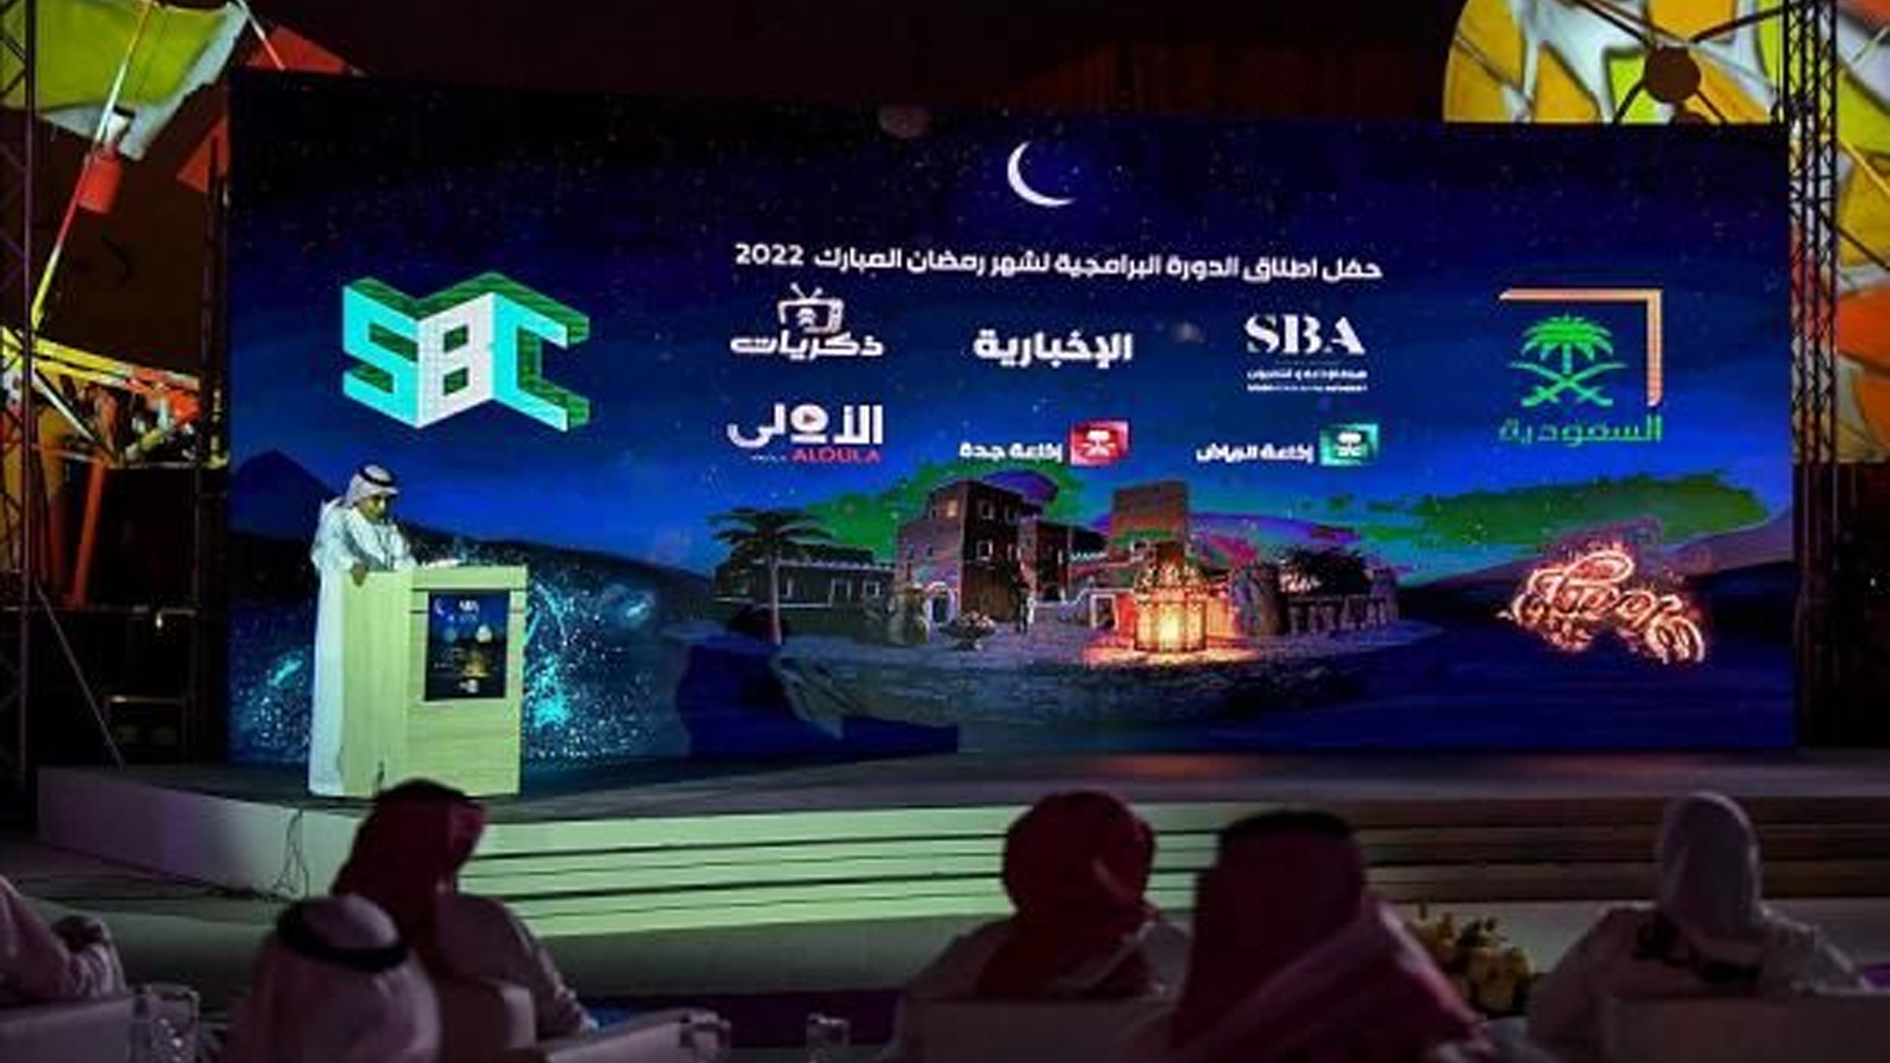 هيئة الإذاعة والتلفزيون السعودية تطلق دورتها البرامجية لشهر رمضان